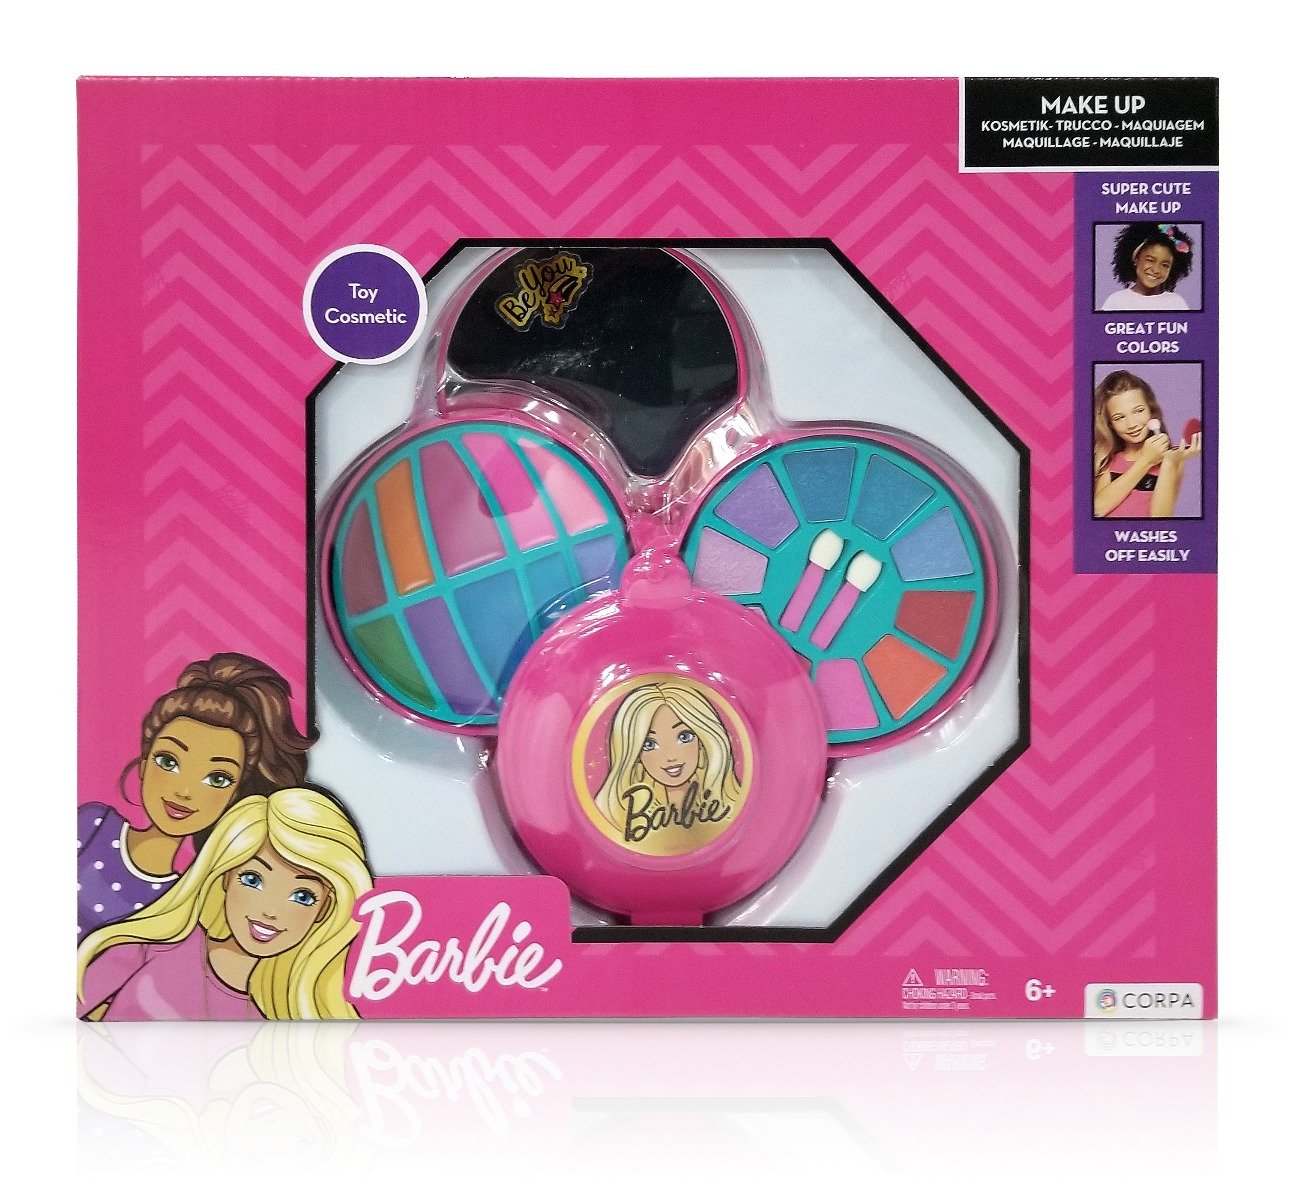 Set de cosmetice in caseta rotunda, cu 3 niveluri, Barbie Barbie imagine 2022